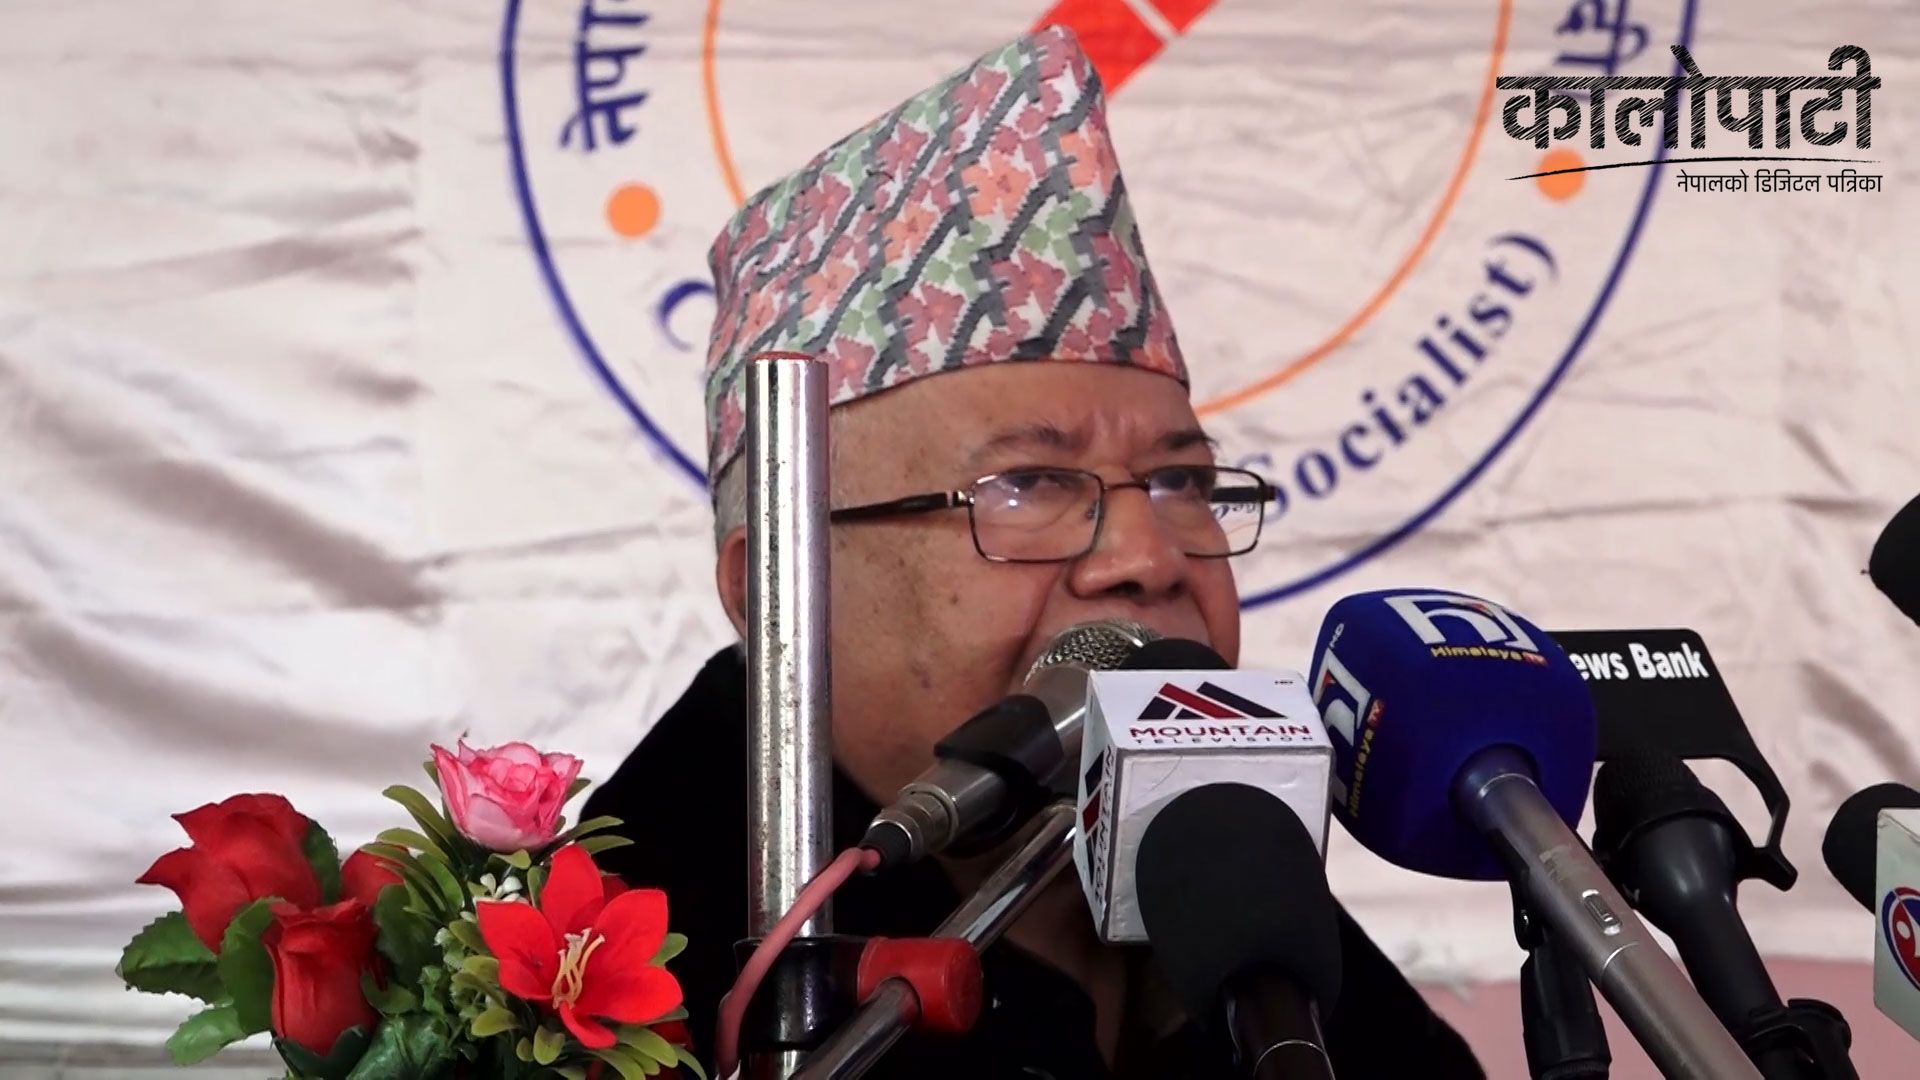 ‘जनताको हीत र कल्याणको लागि धेरै लोकप्रिय कार्यक्रमहरु पनि अघि सारेका छौँ ‘:अध्यक्ष नेपाल , हेर्नुहोस् भिडियो